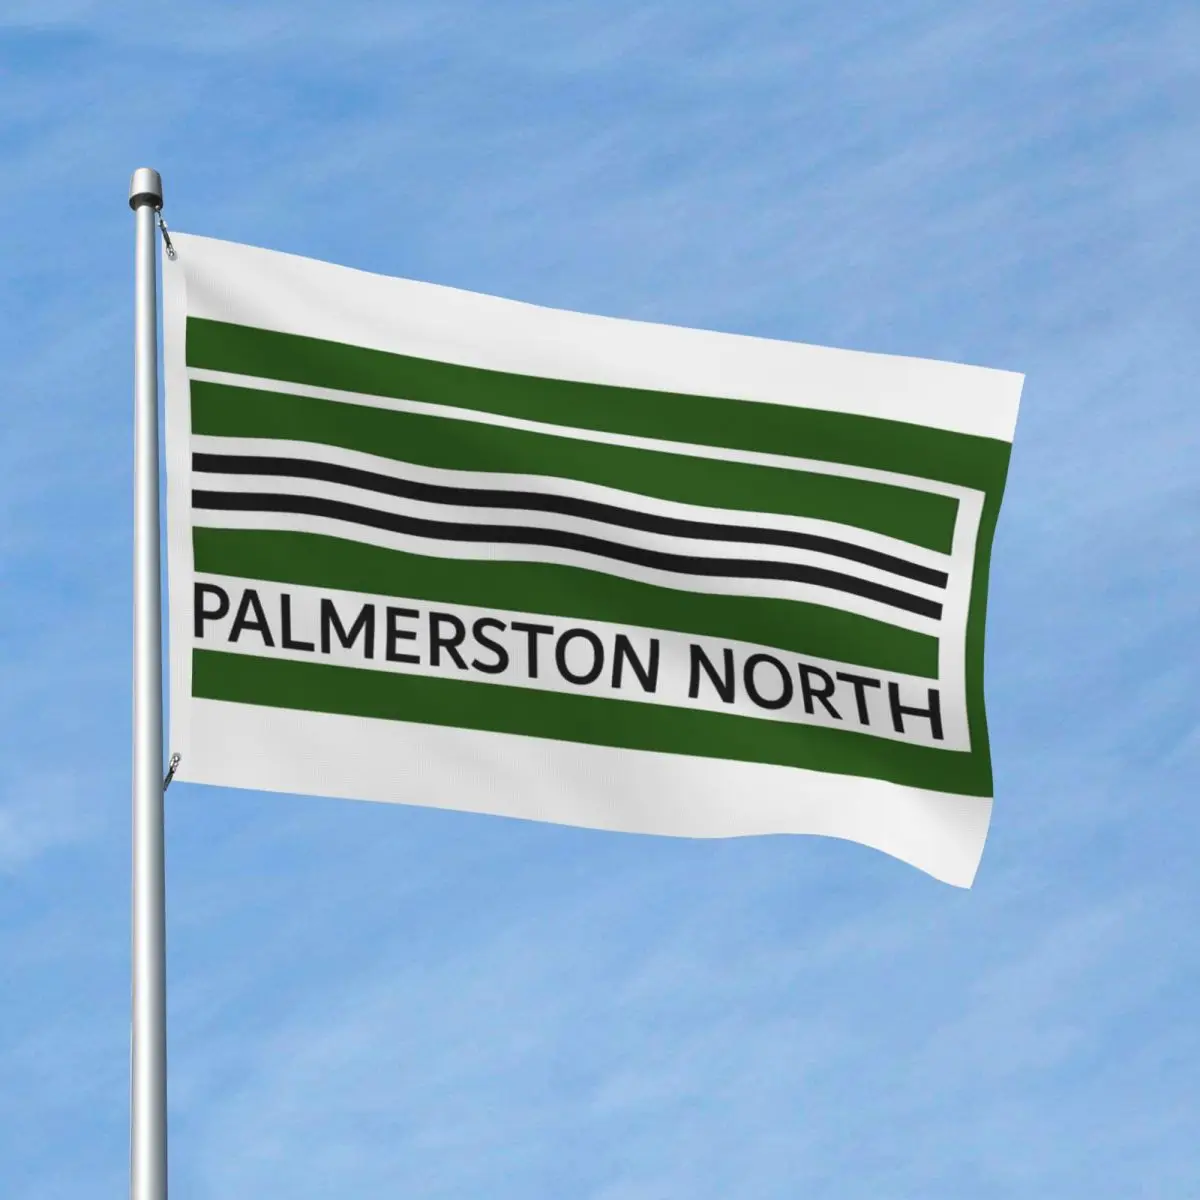 

Палмерстон, Северный флаг и наименование, искусственный полиэфирный материал, декоративная, устойчивая к выцветанию, яркая драпировка